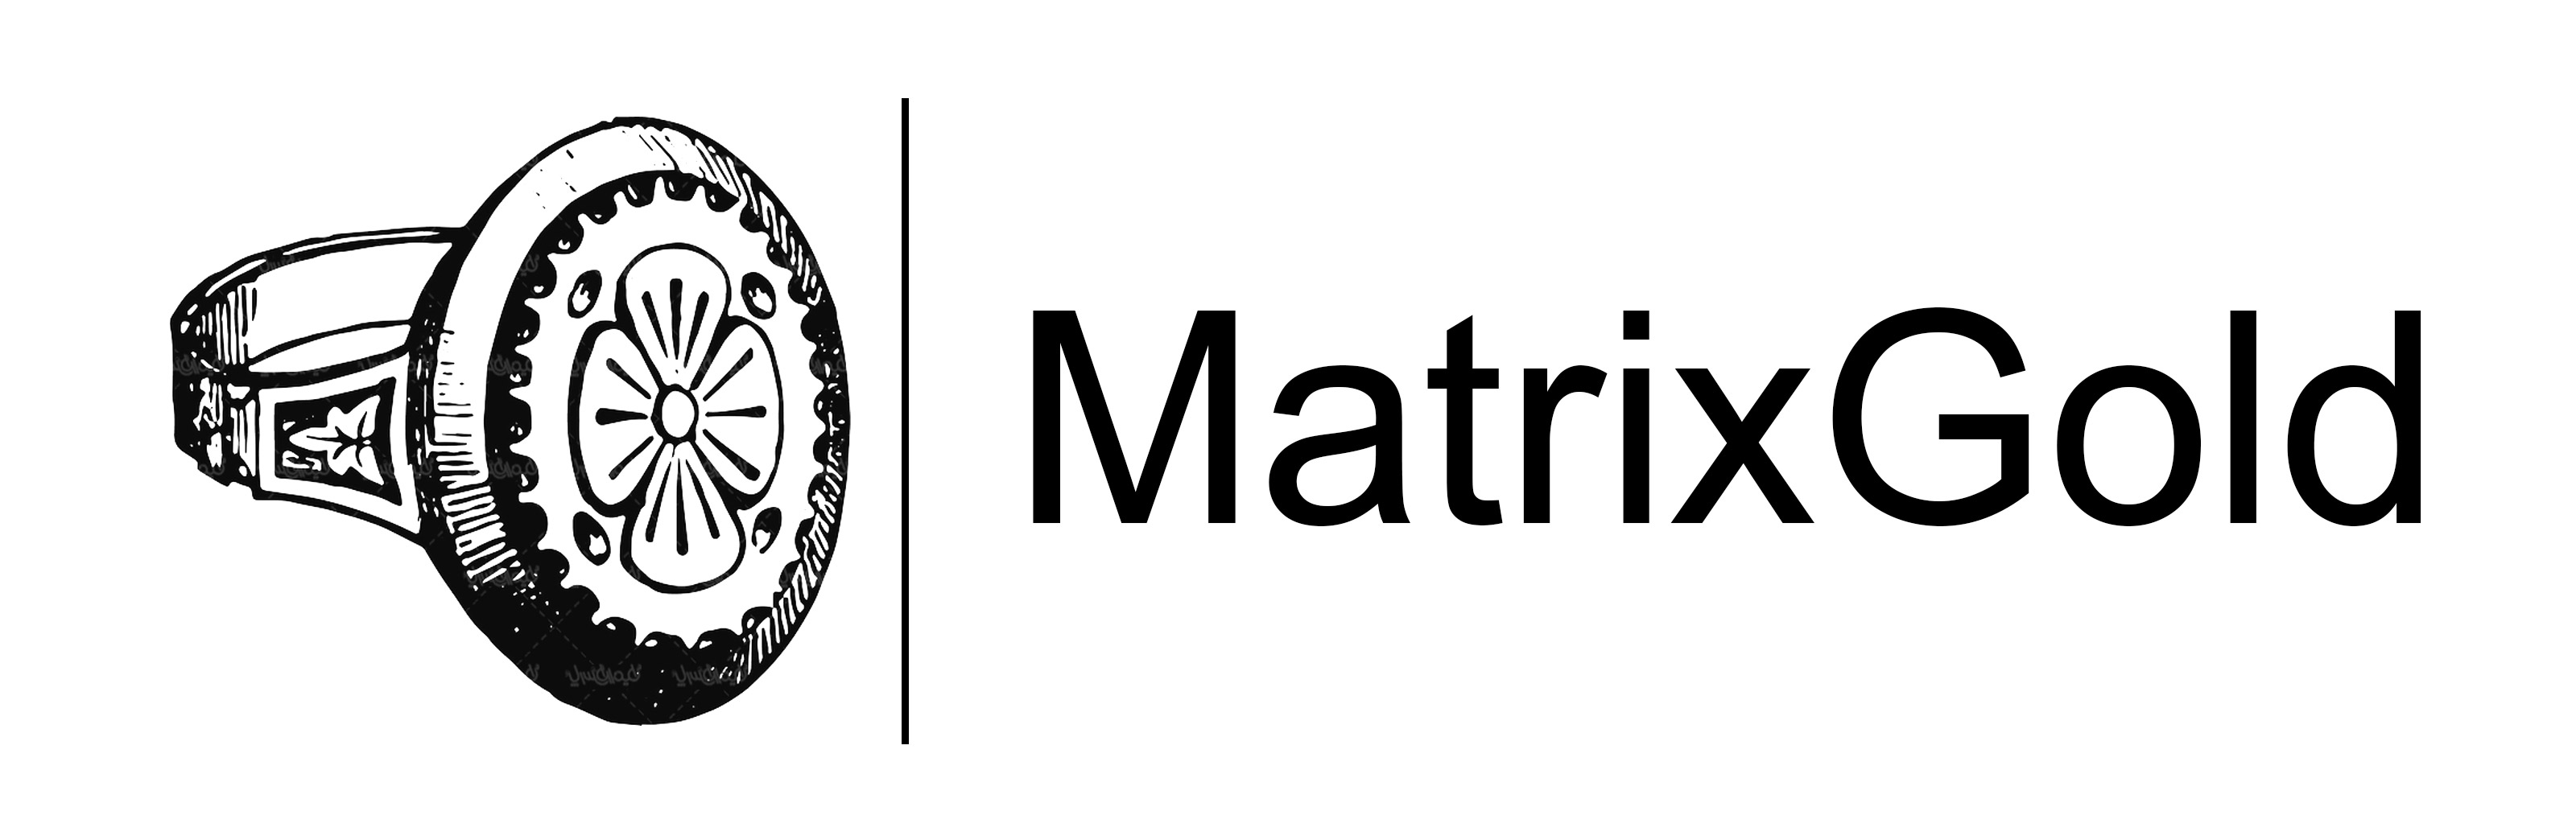 MatrixGold logo mehregan esfahan